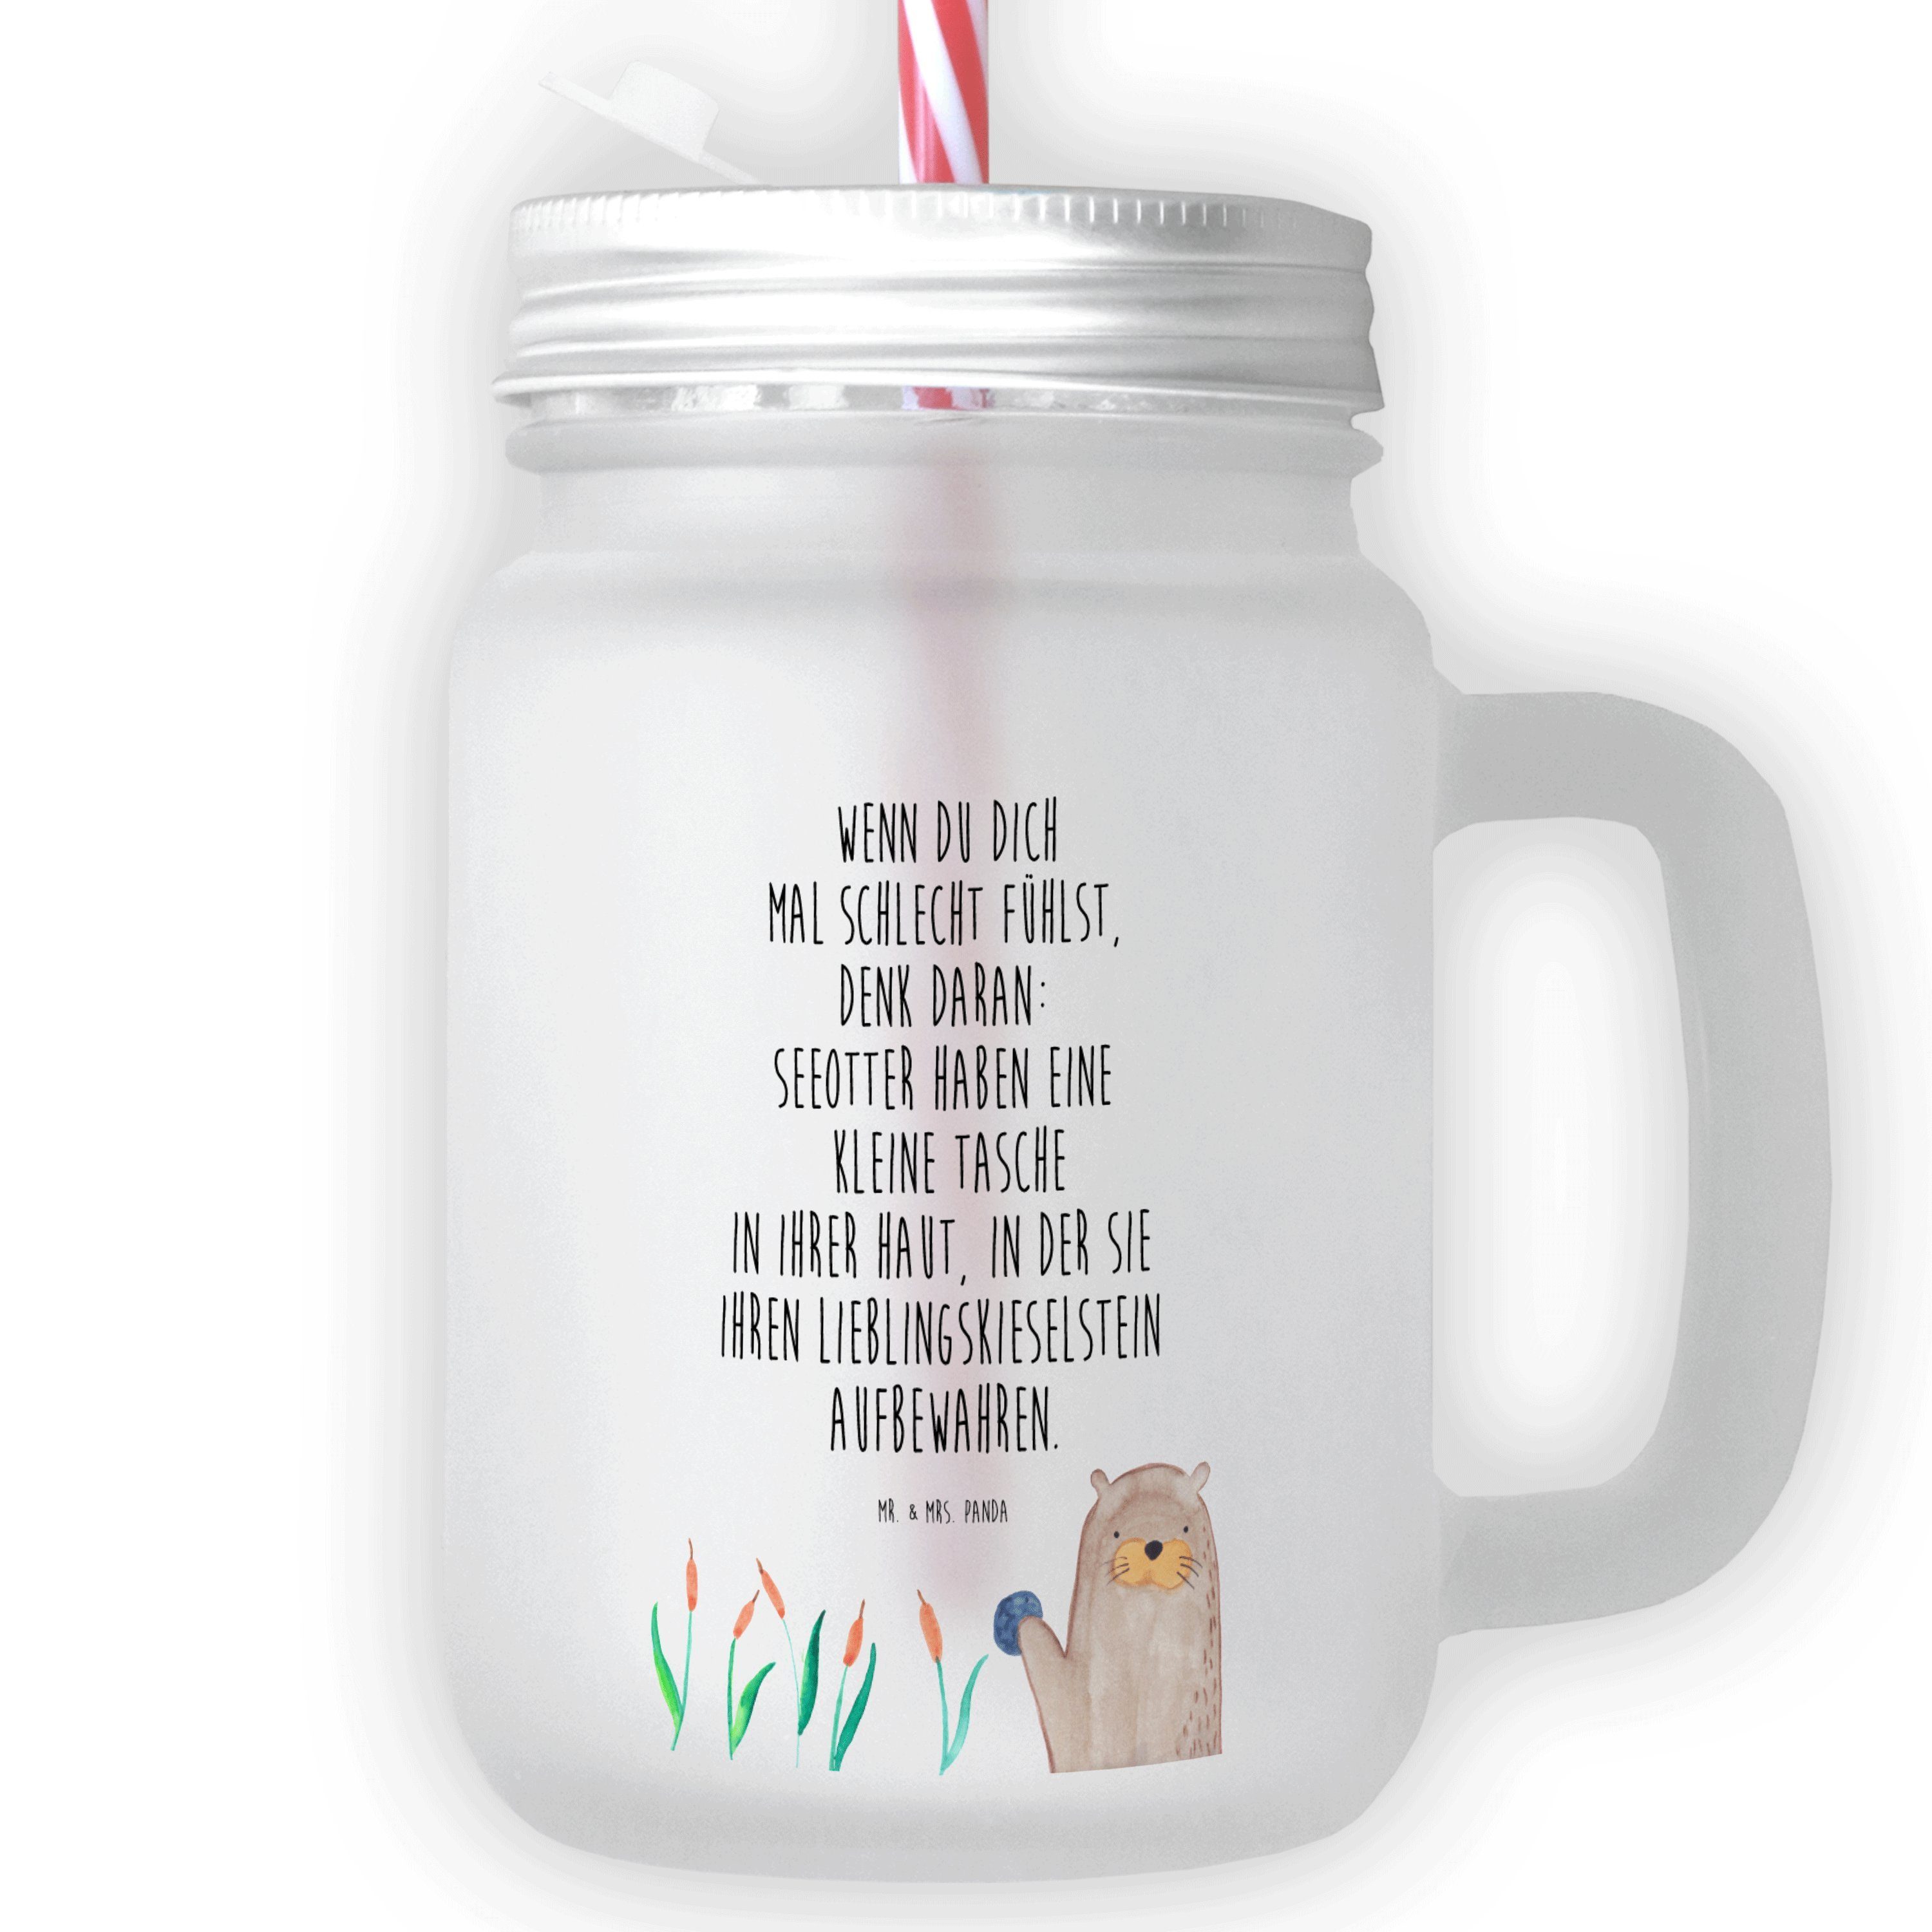 Mr. & Mrs. Panda Glas Otter mit Stein - Transparent - Geschenk, Seeotter, grüßen, Trinkglas, Premium Glas